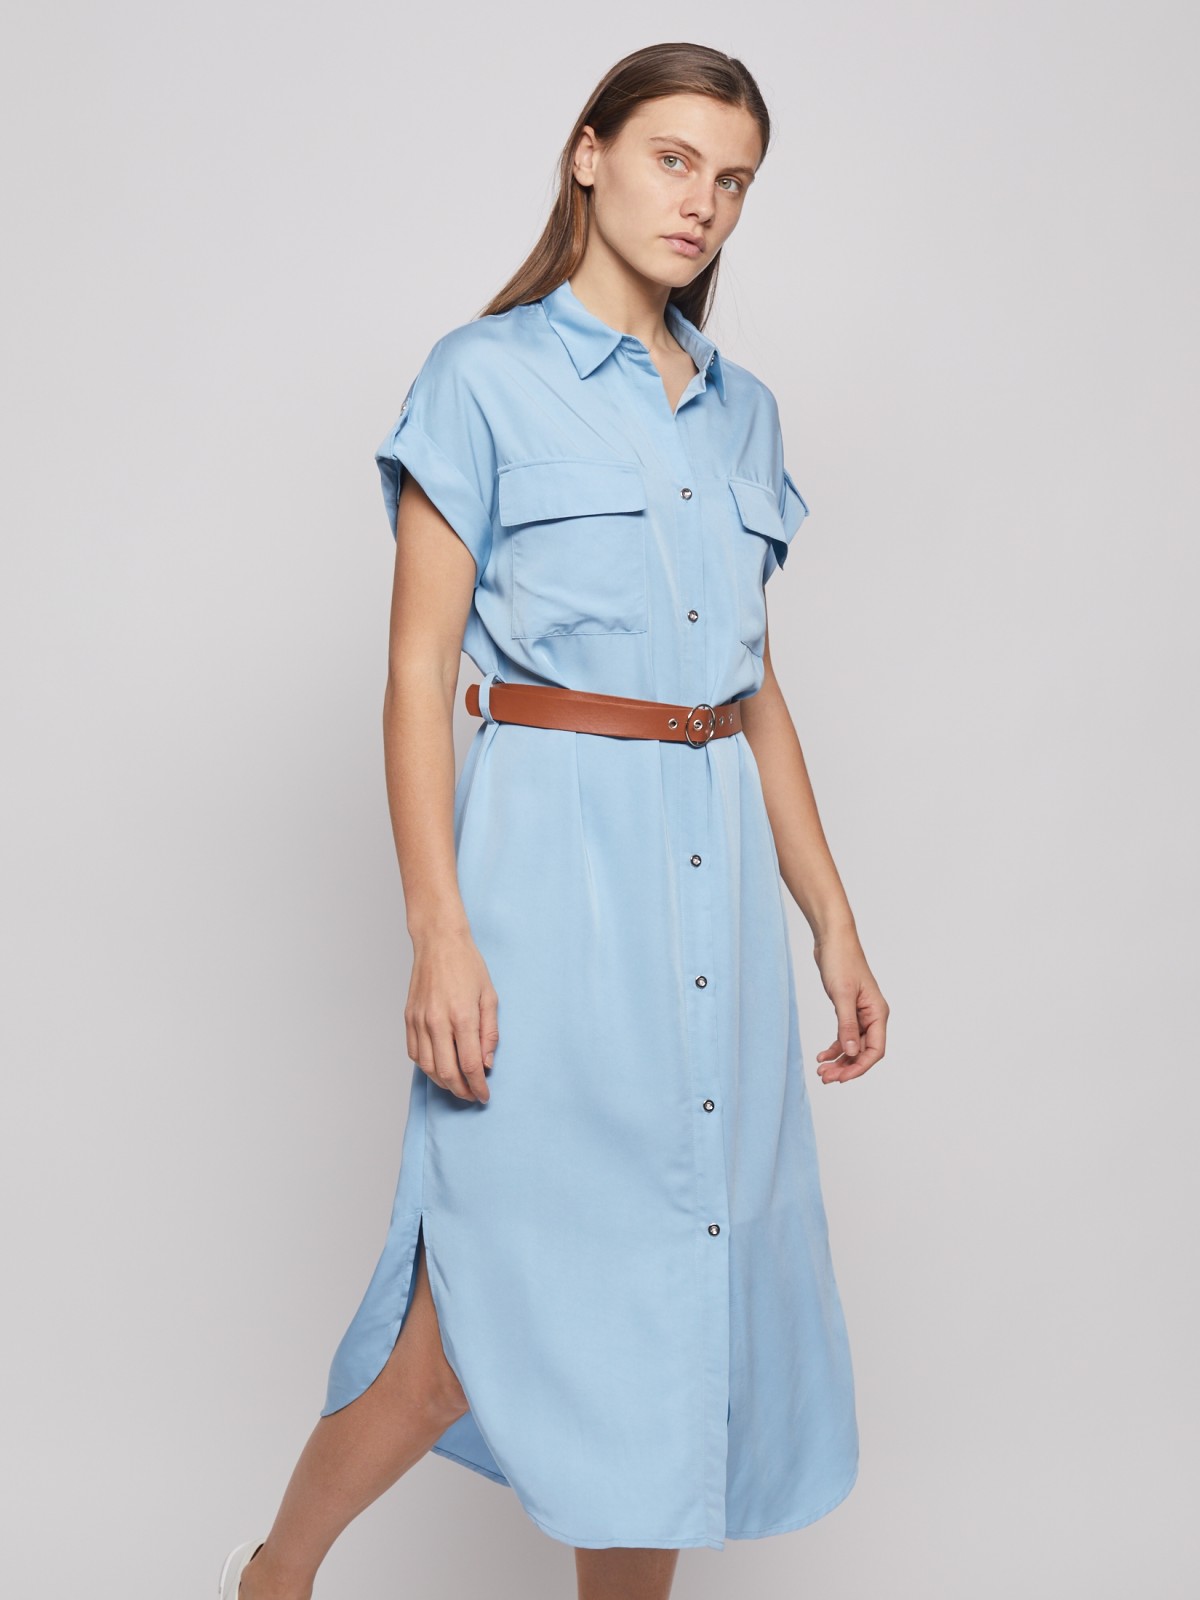 Платье-рубашка с ремнём zolla 022238259043, цвет светло-голубой, размер S - фото 2